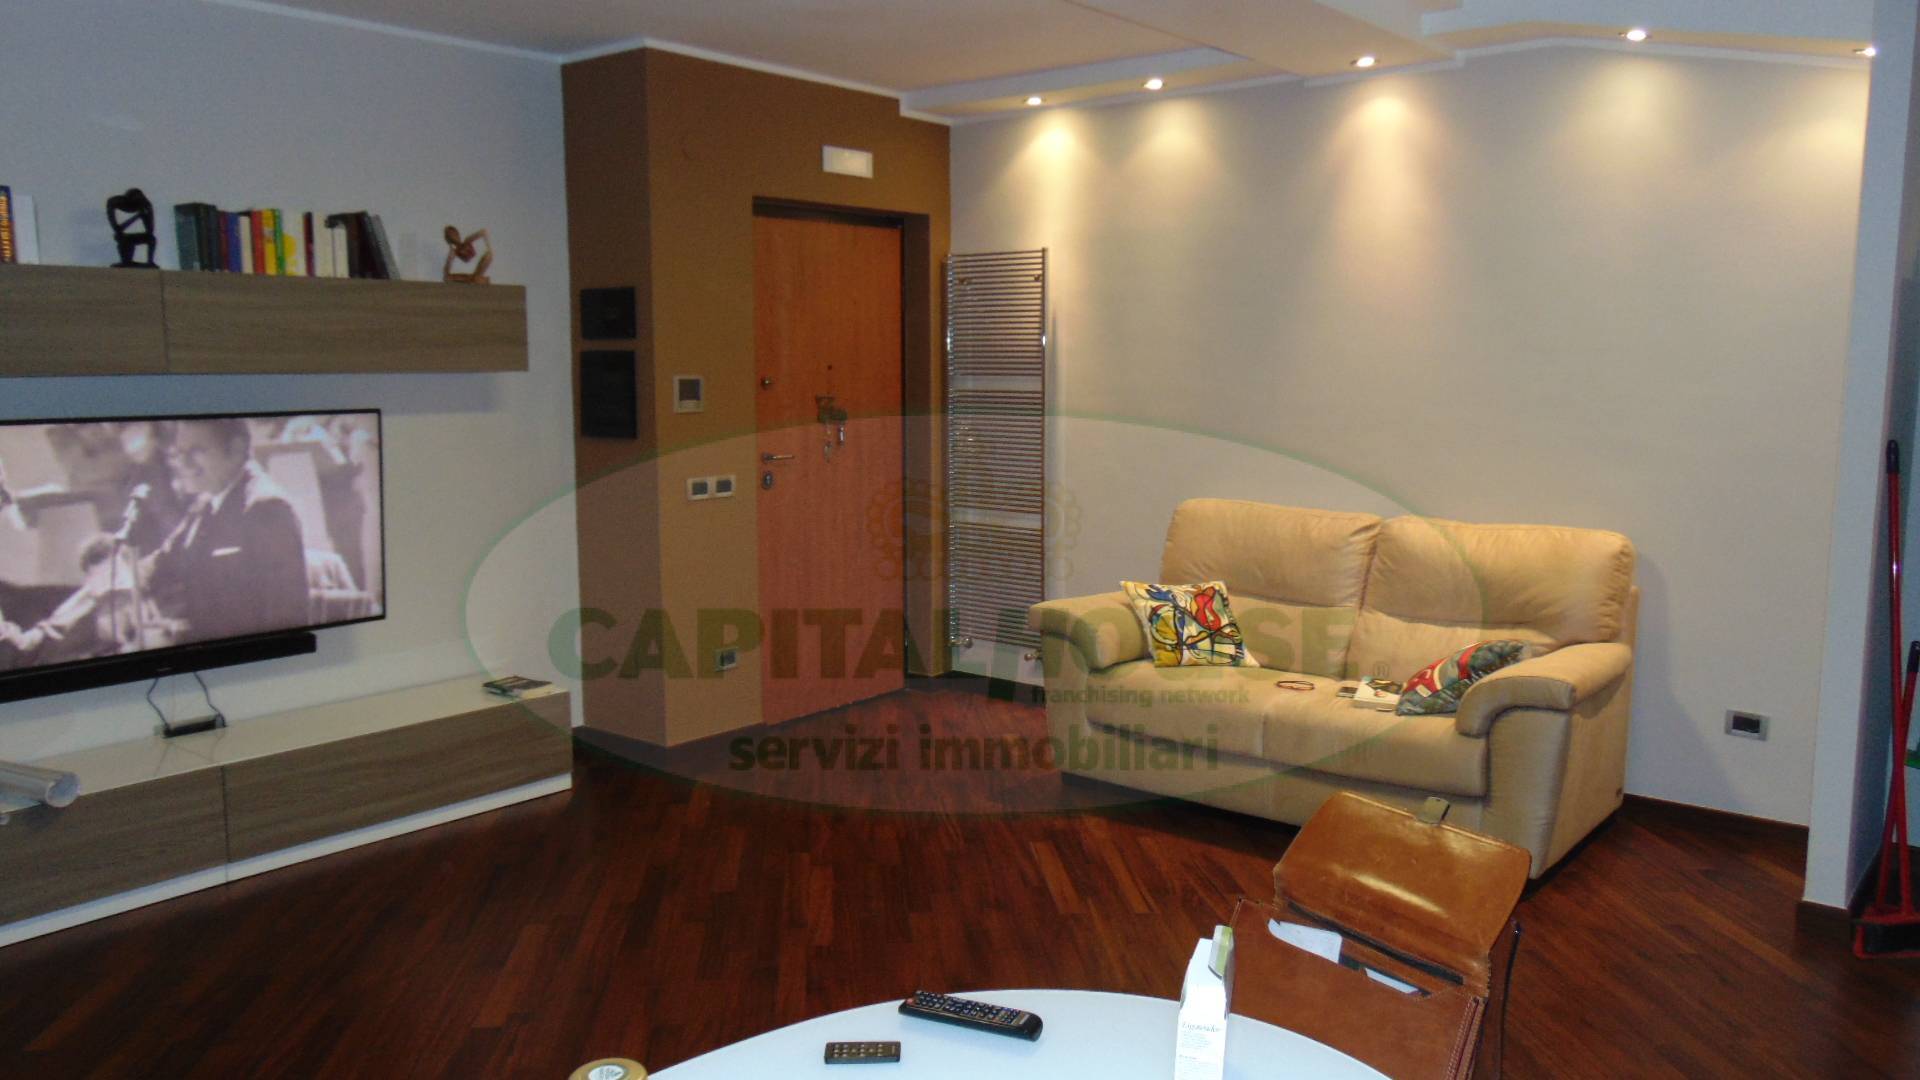 Appartamento in vendita a Quadrelle, 3 locali, prezzo € 126.000 | CambioCasa.it